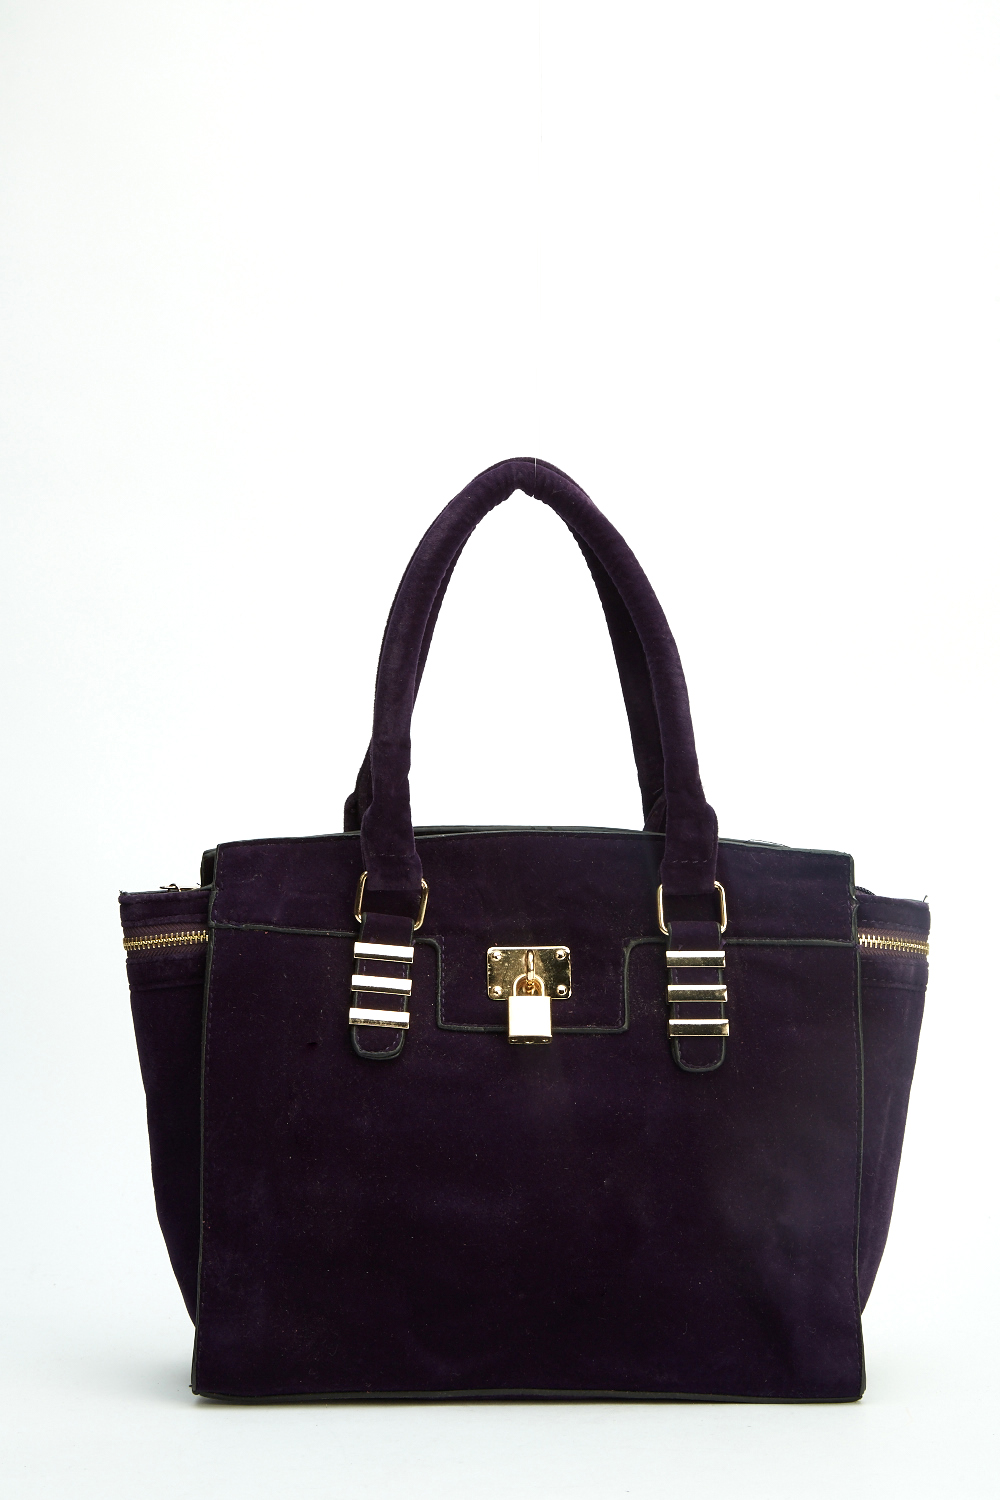 Velveteen Winged Handbag - Just $7